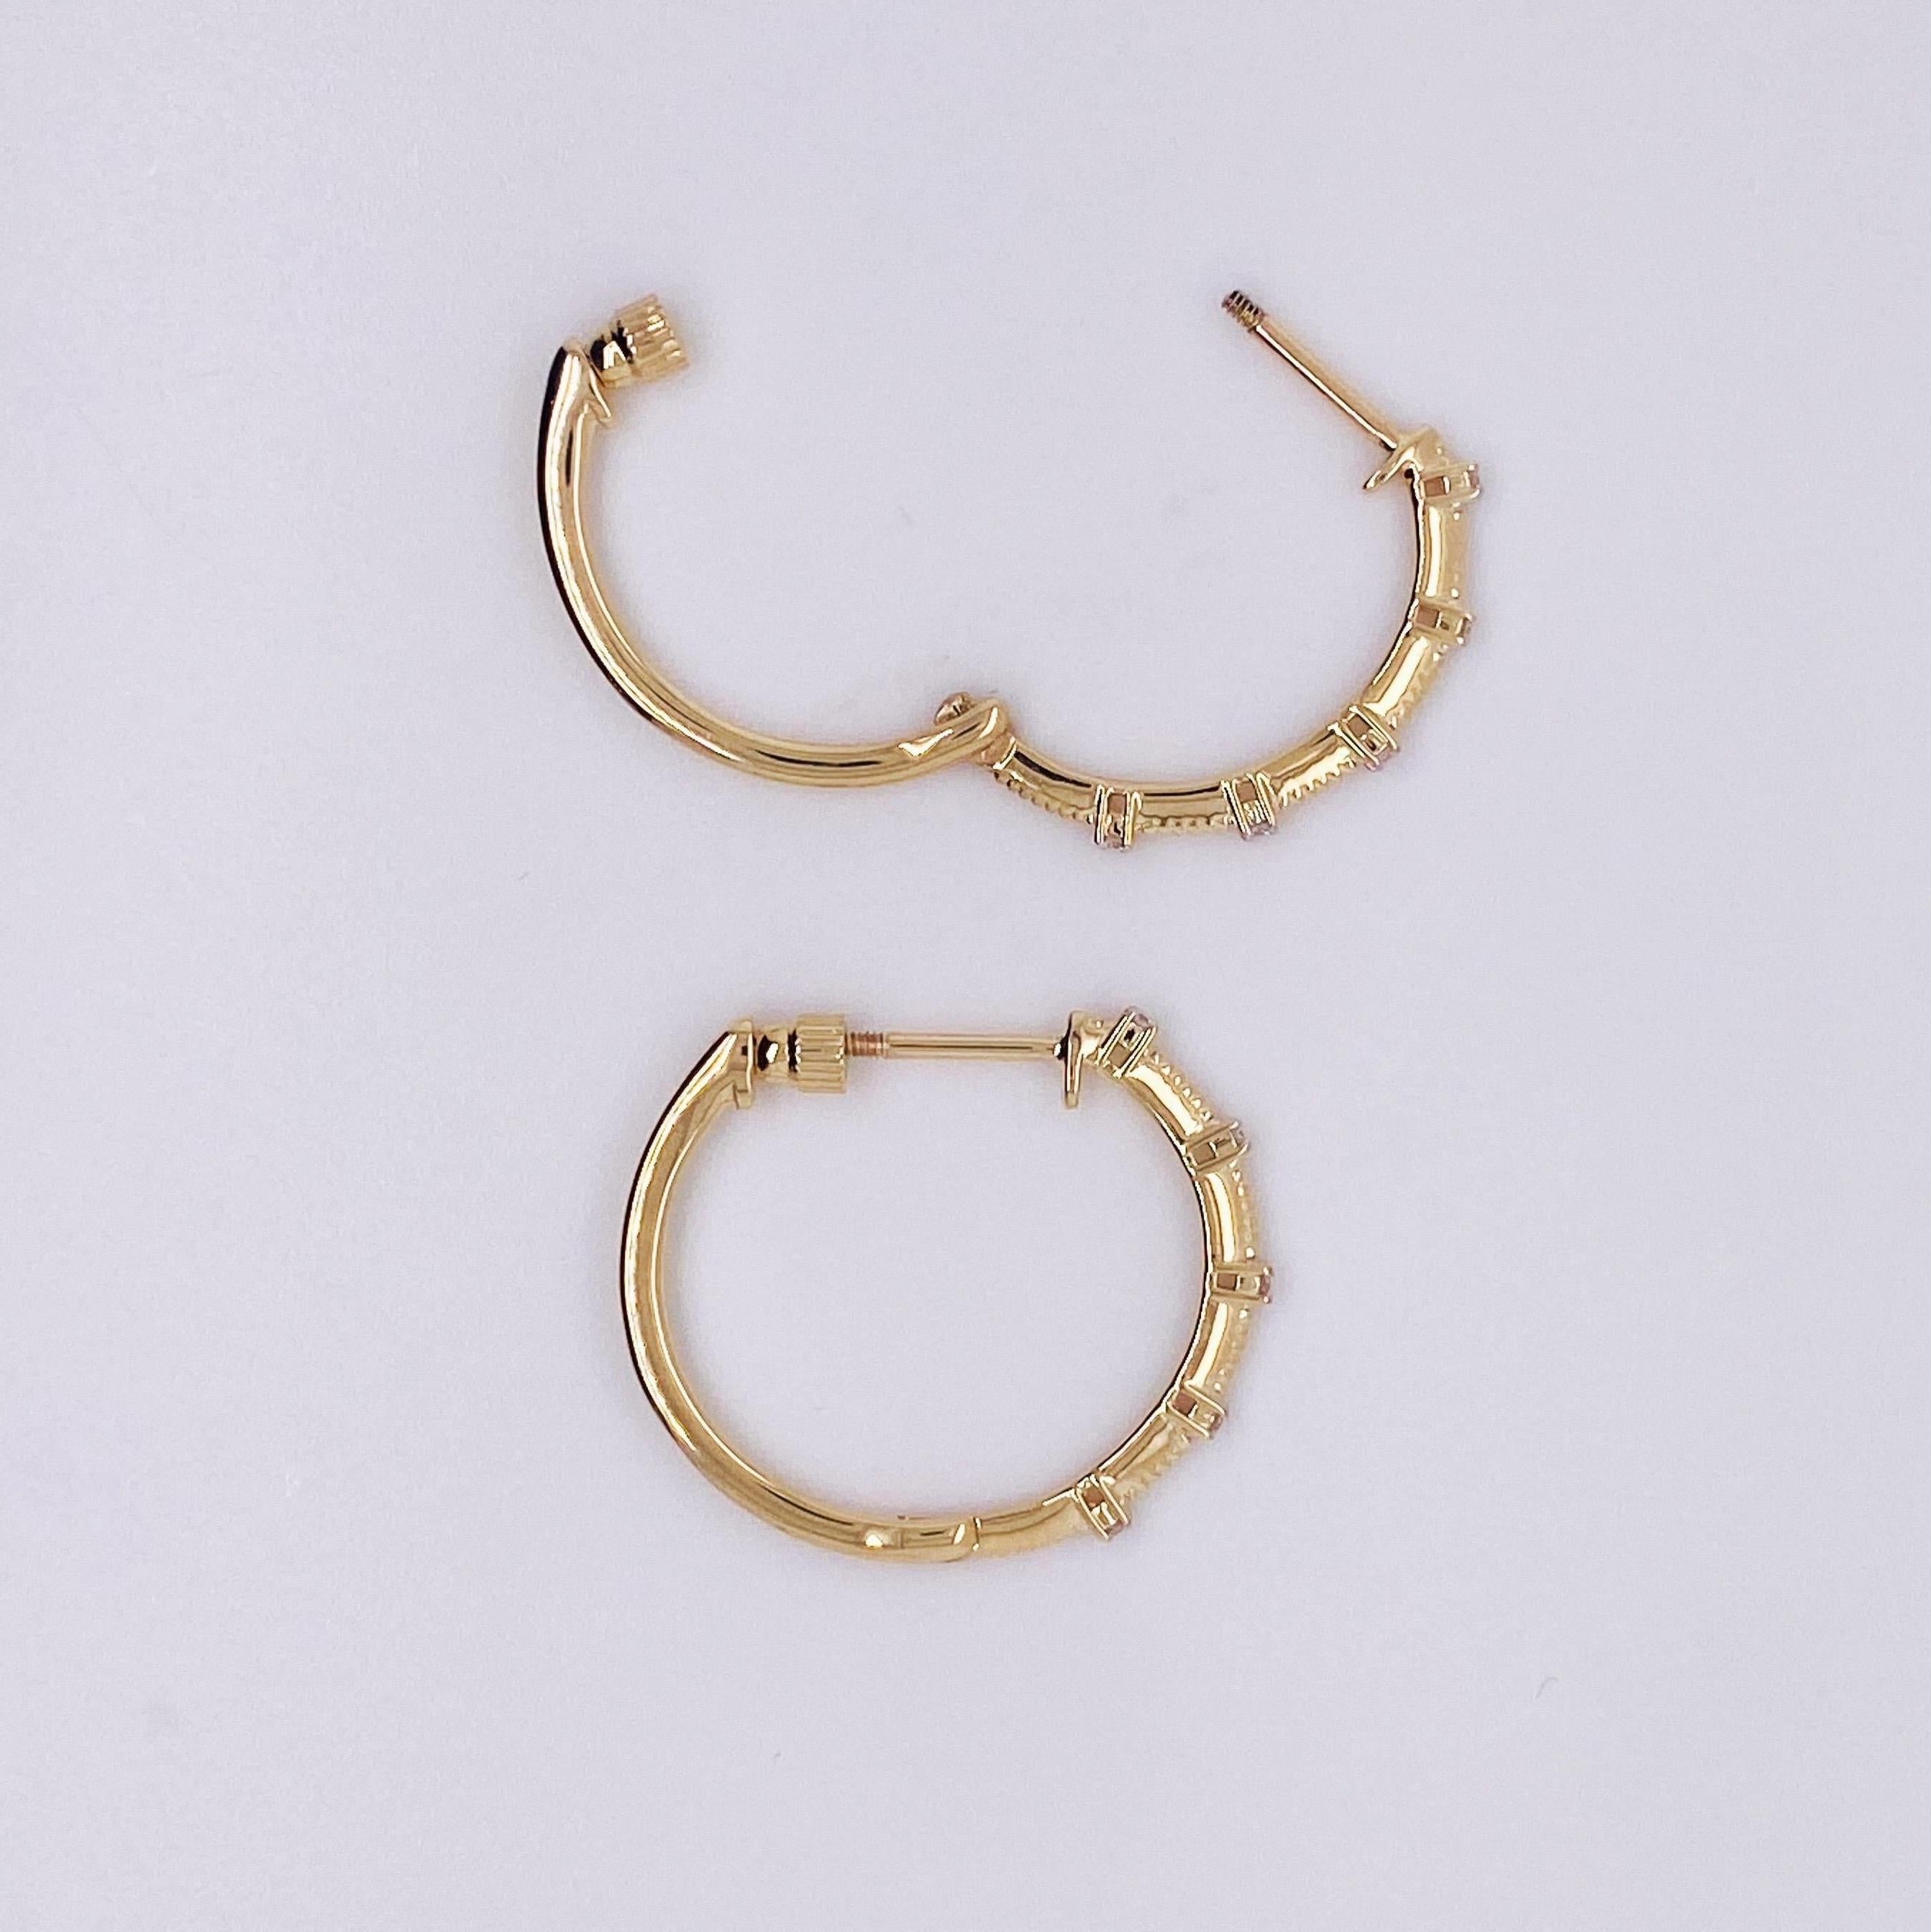 Women's Diamond Station Threaded Hoop Earrings in 14k Yellow / White Gold, EG13761 LV For Sale